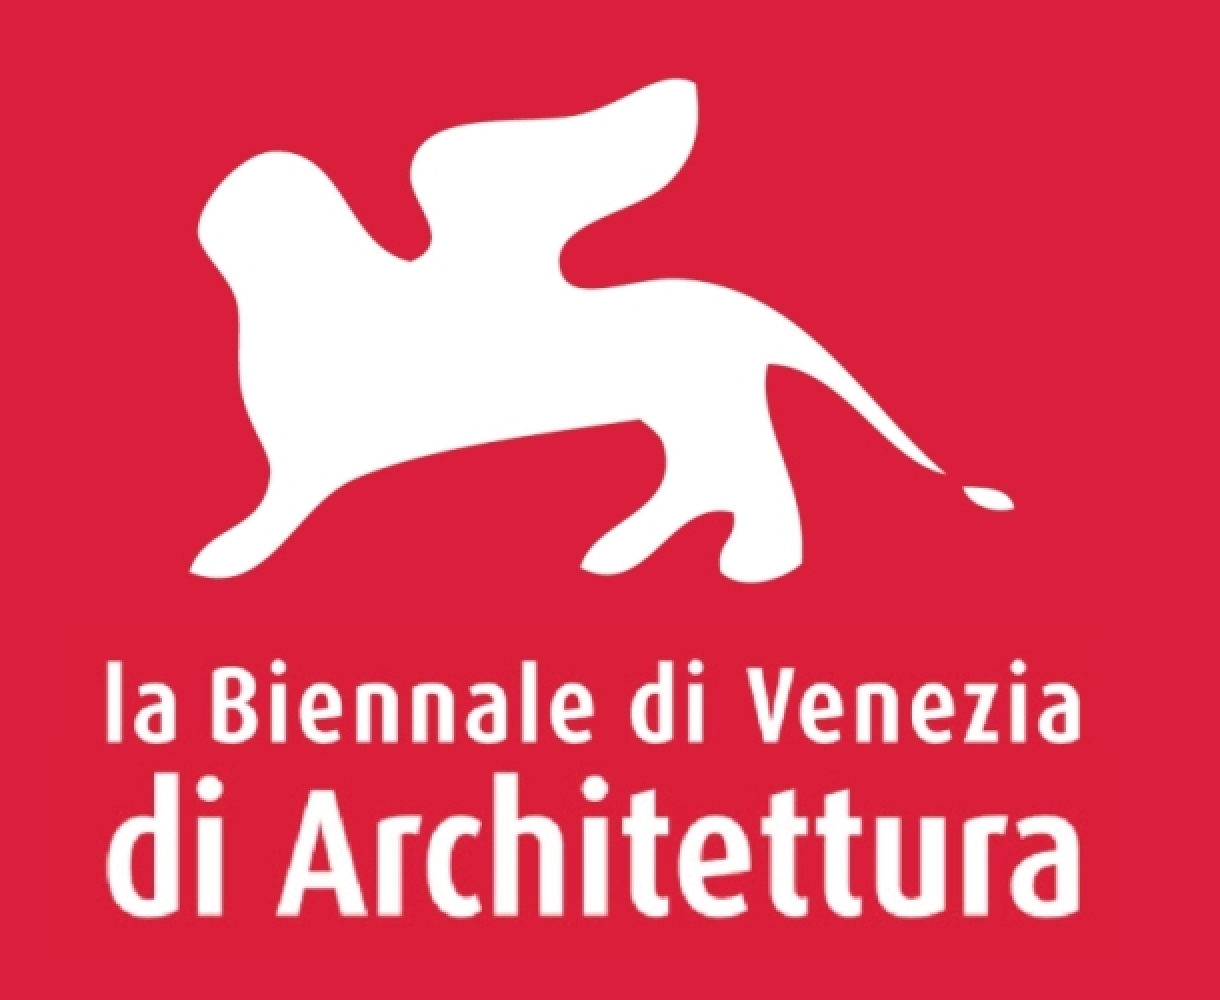 La Biennale di Venezia di Architettura